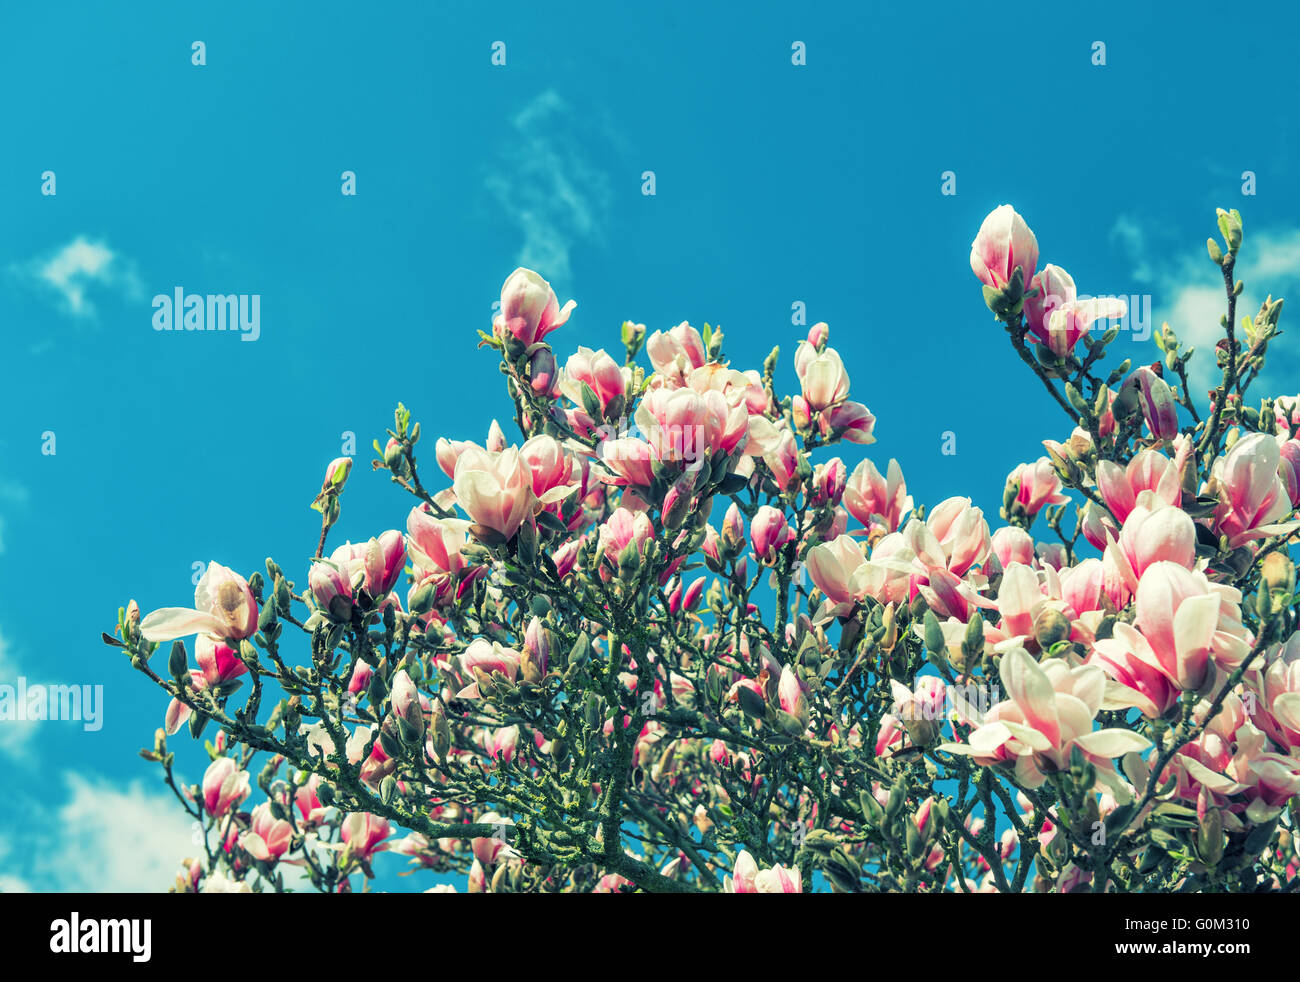 Magnolie blüht. Frühling Blumen und blauer Himmel. Vintage-Stil getönten Bild Stockfoto